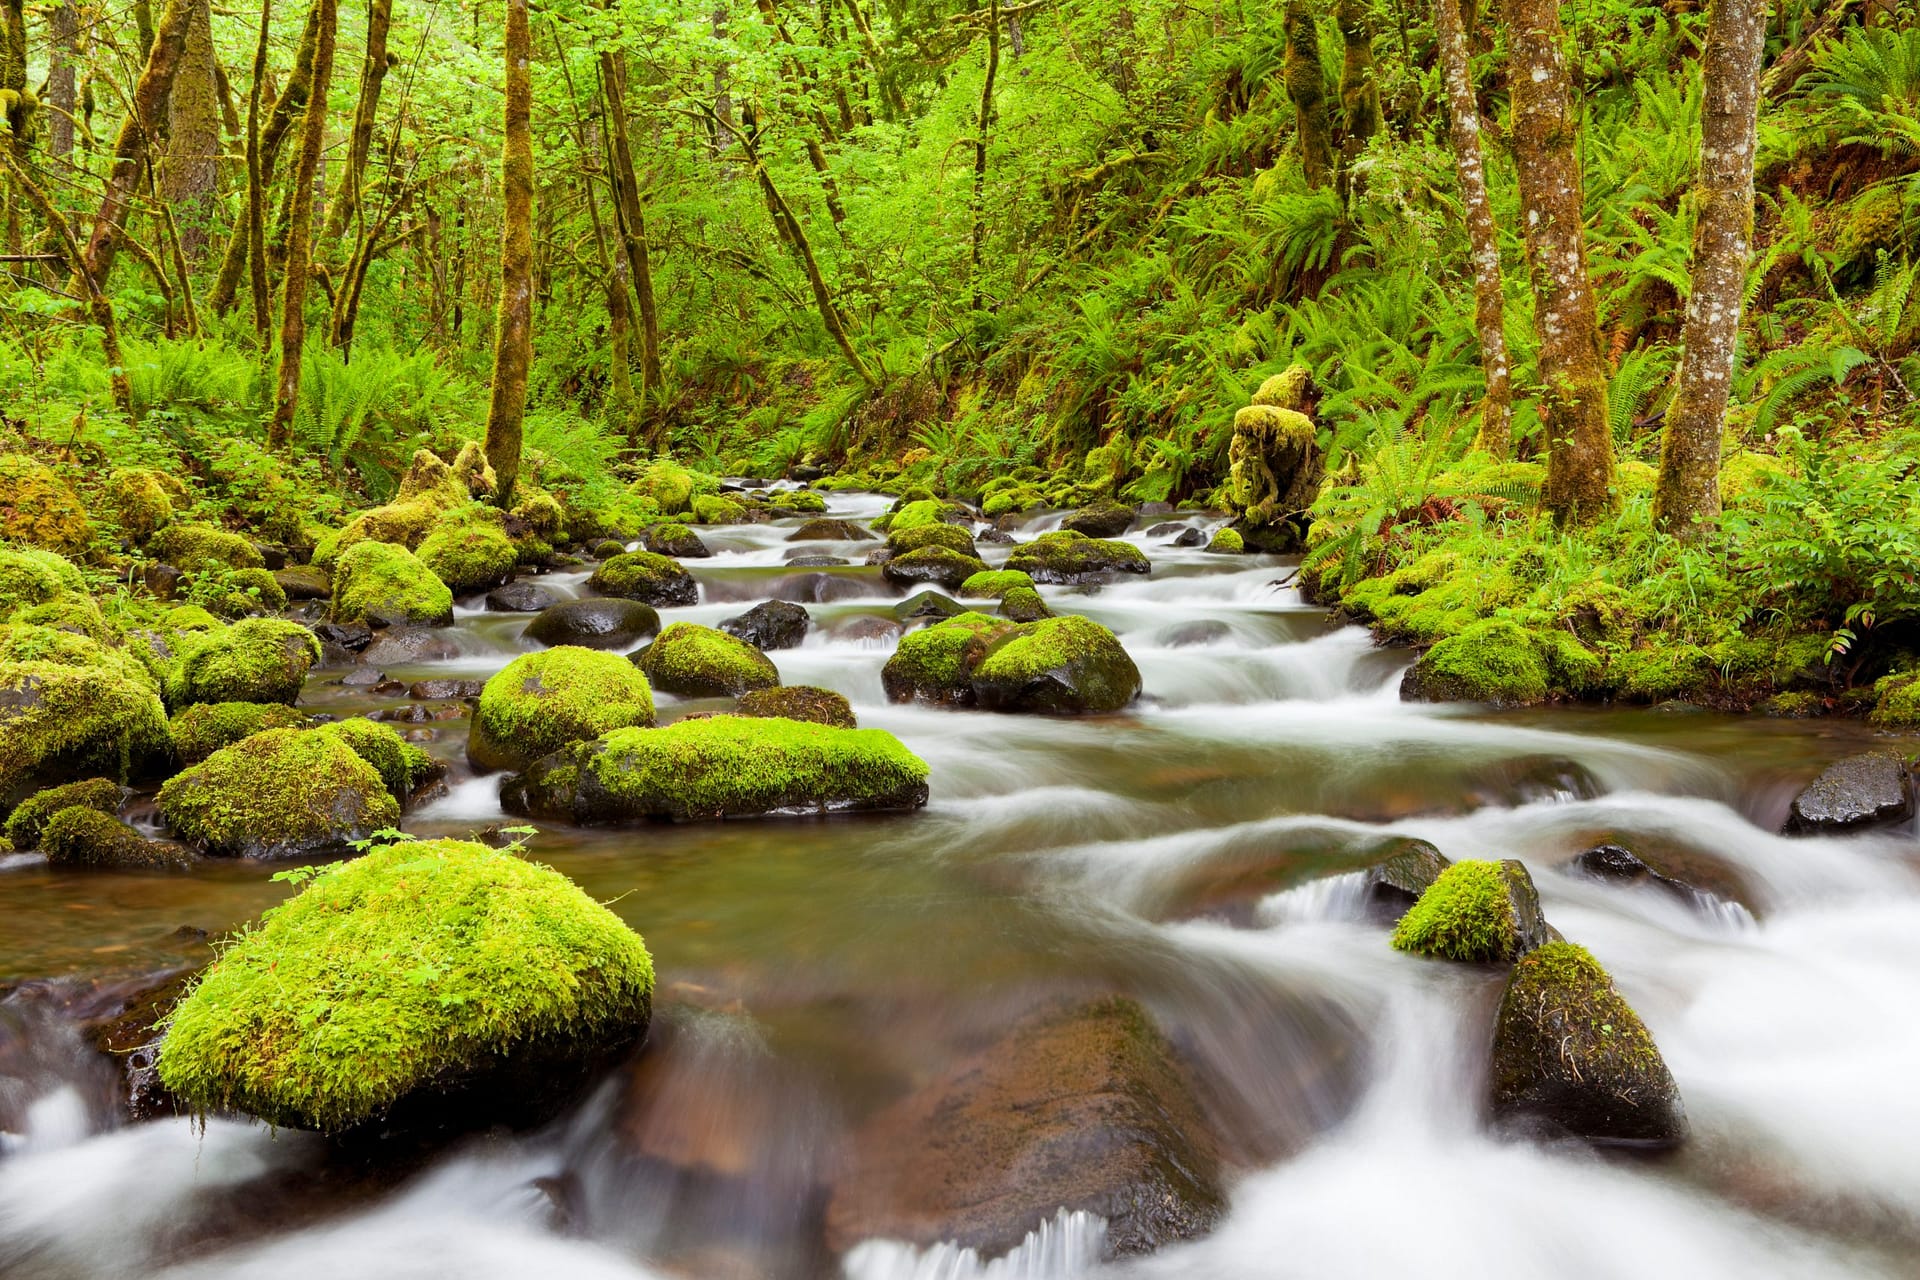 Gorton Creek through lush rainforest, Columbia River Gorge, Oreg